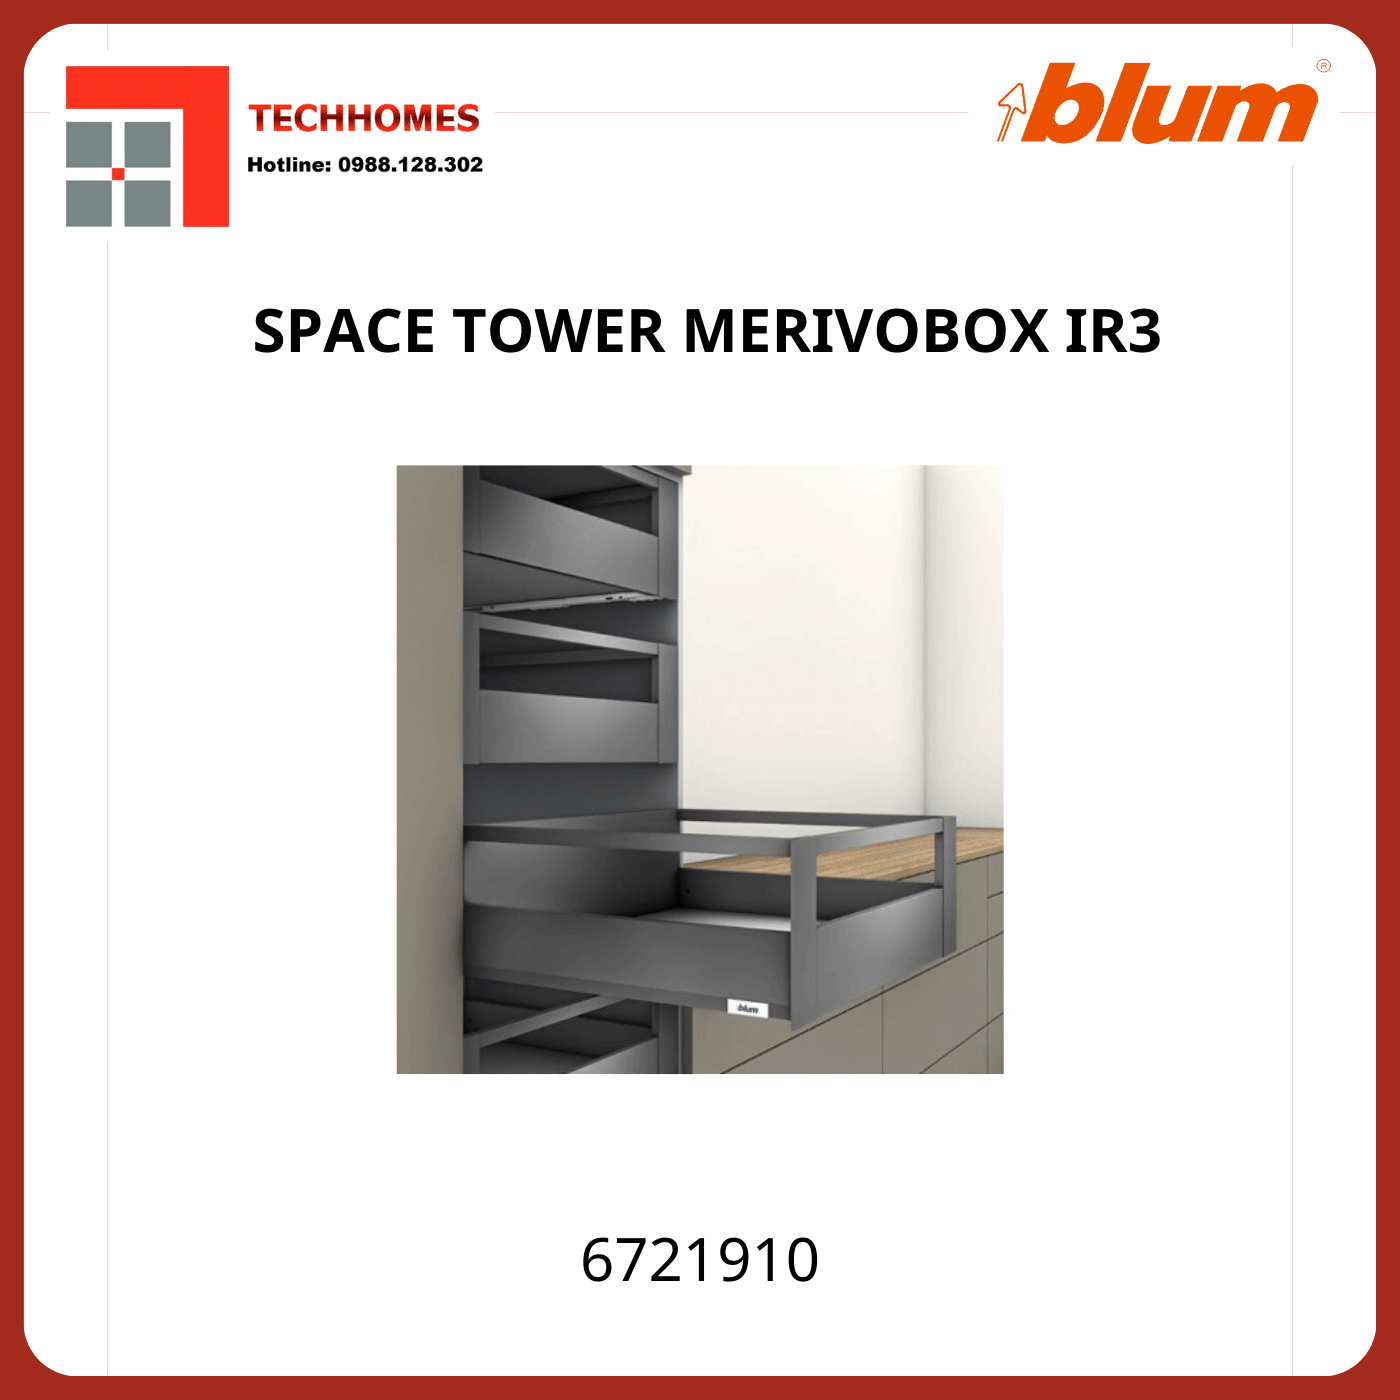 Tủ đồ khô Blum SPACE TOWER MERIVOBOX IR3, 6721910, xám nhạt - 6721910